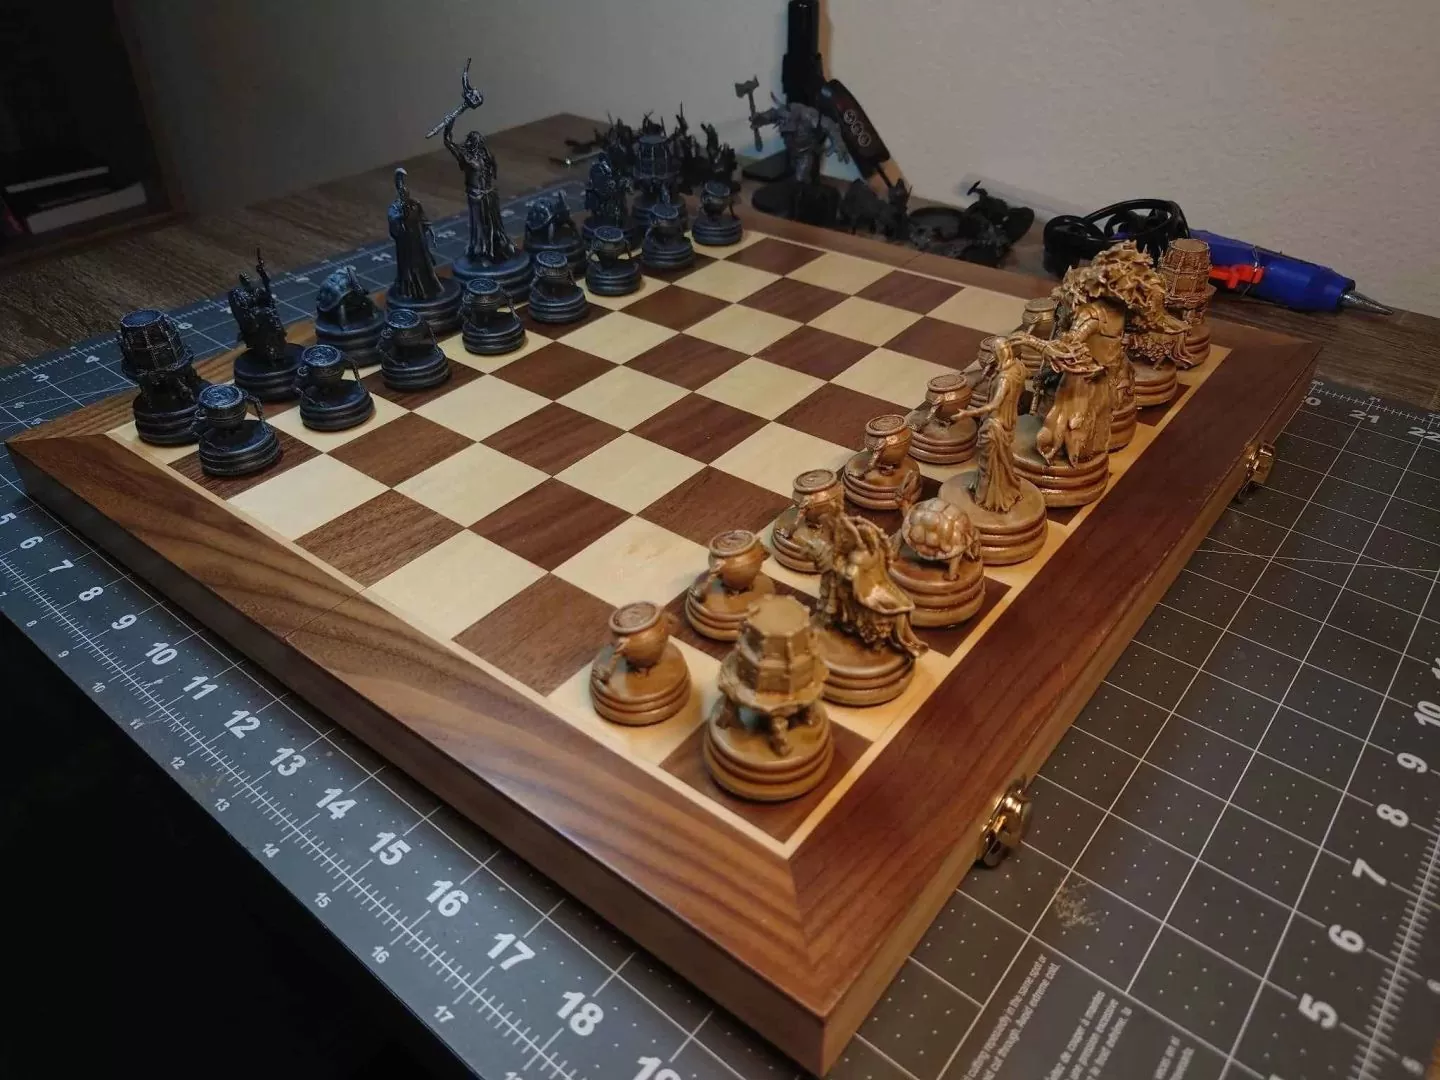 《艾尔登法环》粉丝生日获友人赠送3D打印国际象棋，手工涂装后成为超精致周边